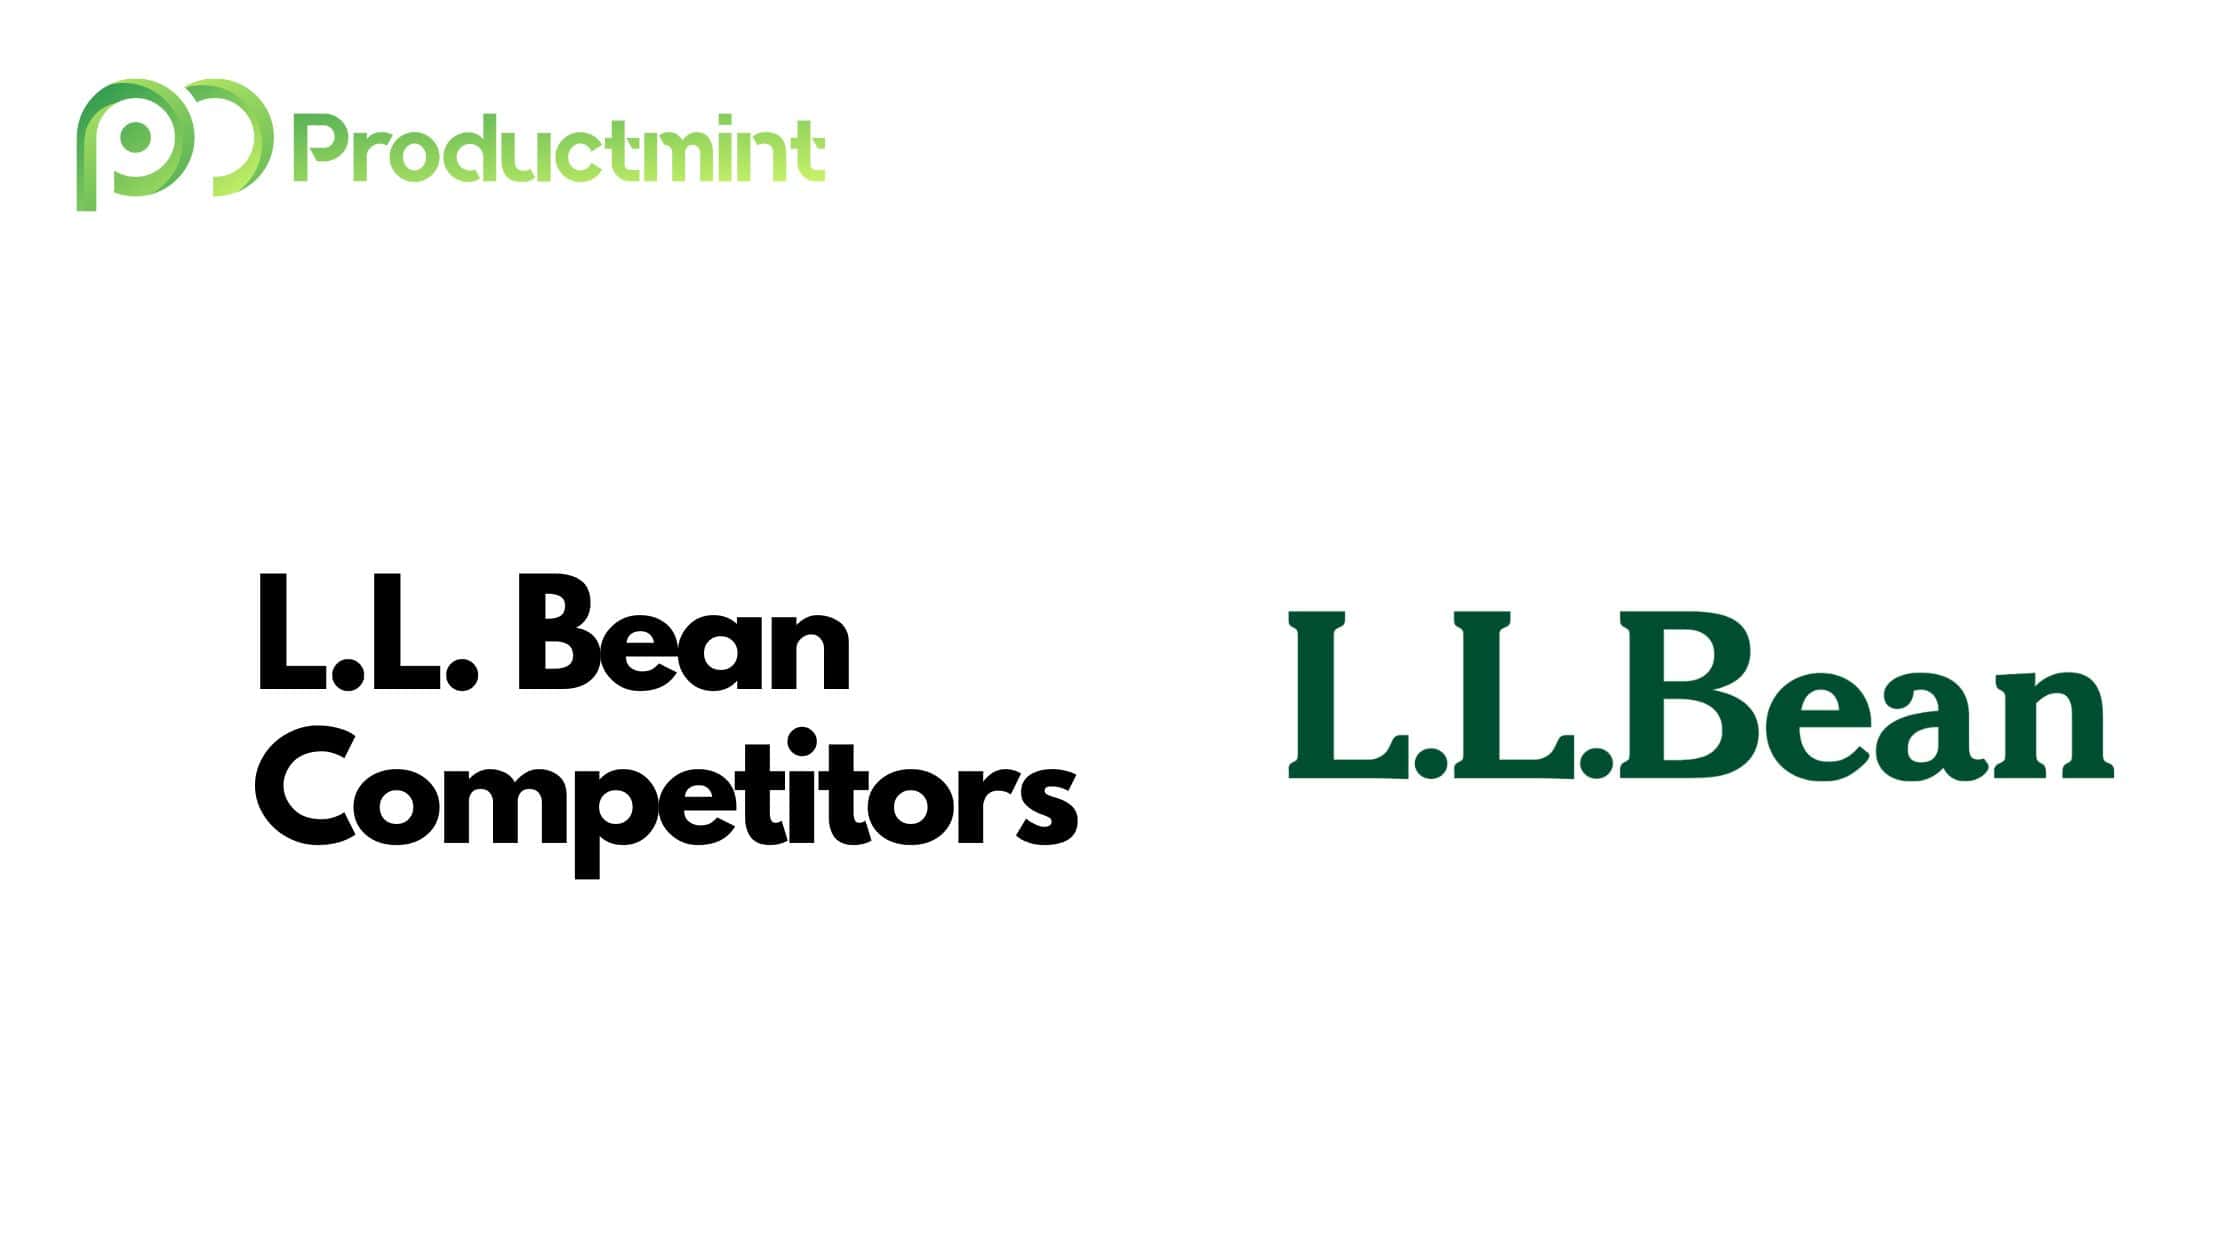 L.L. Bean Competitors